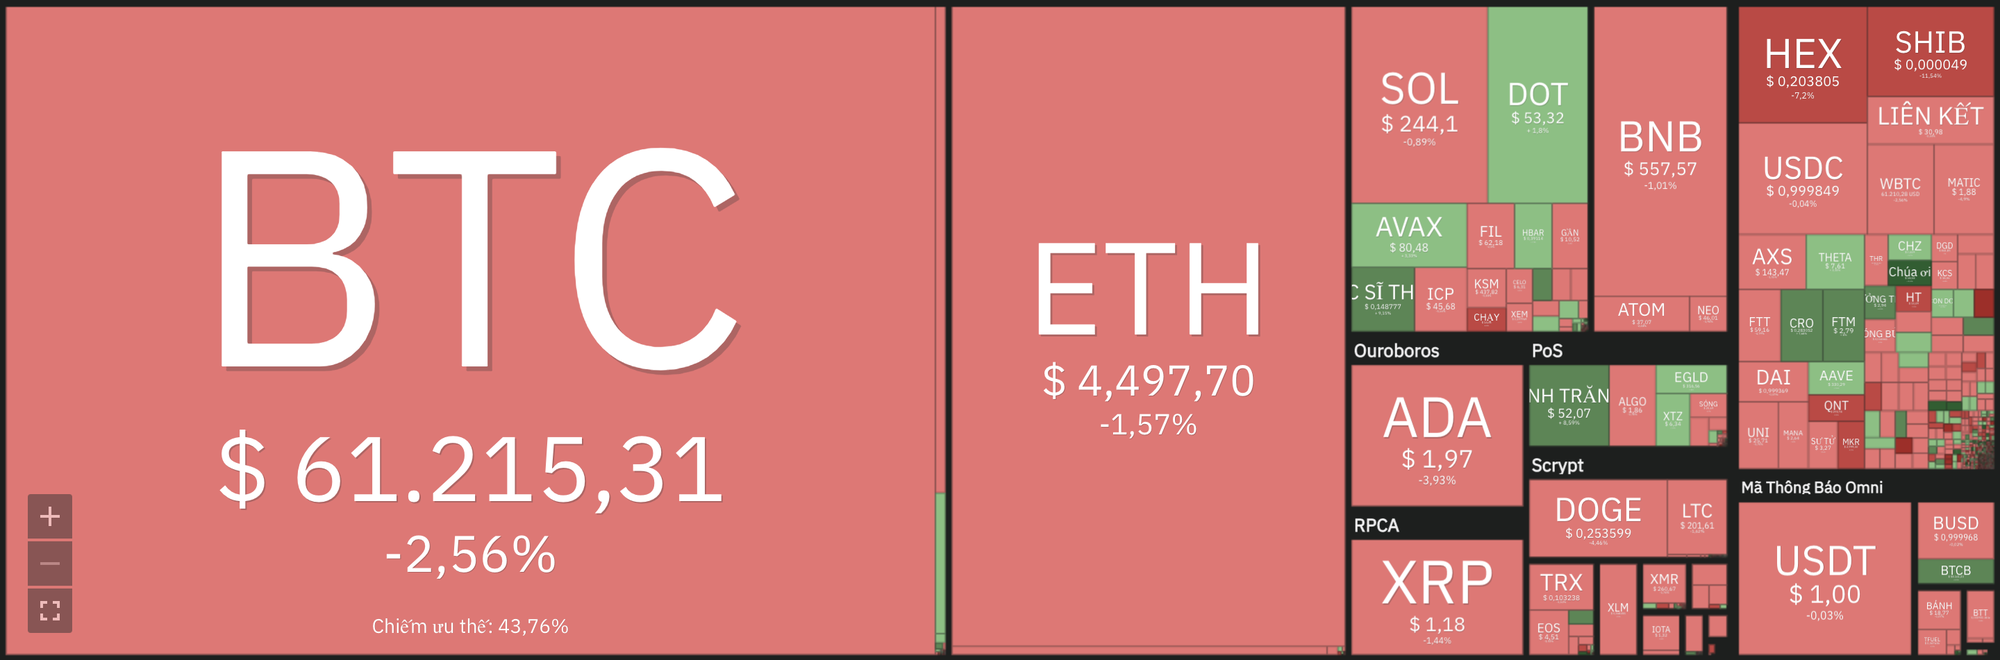 Giá Bitcoin hôm nay 6/11:  Altcoin tăng ngay cả khi giá Bitcoin và Ethereum giảm xuống mức hỗ trợ - Ảnh 8.